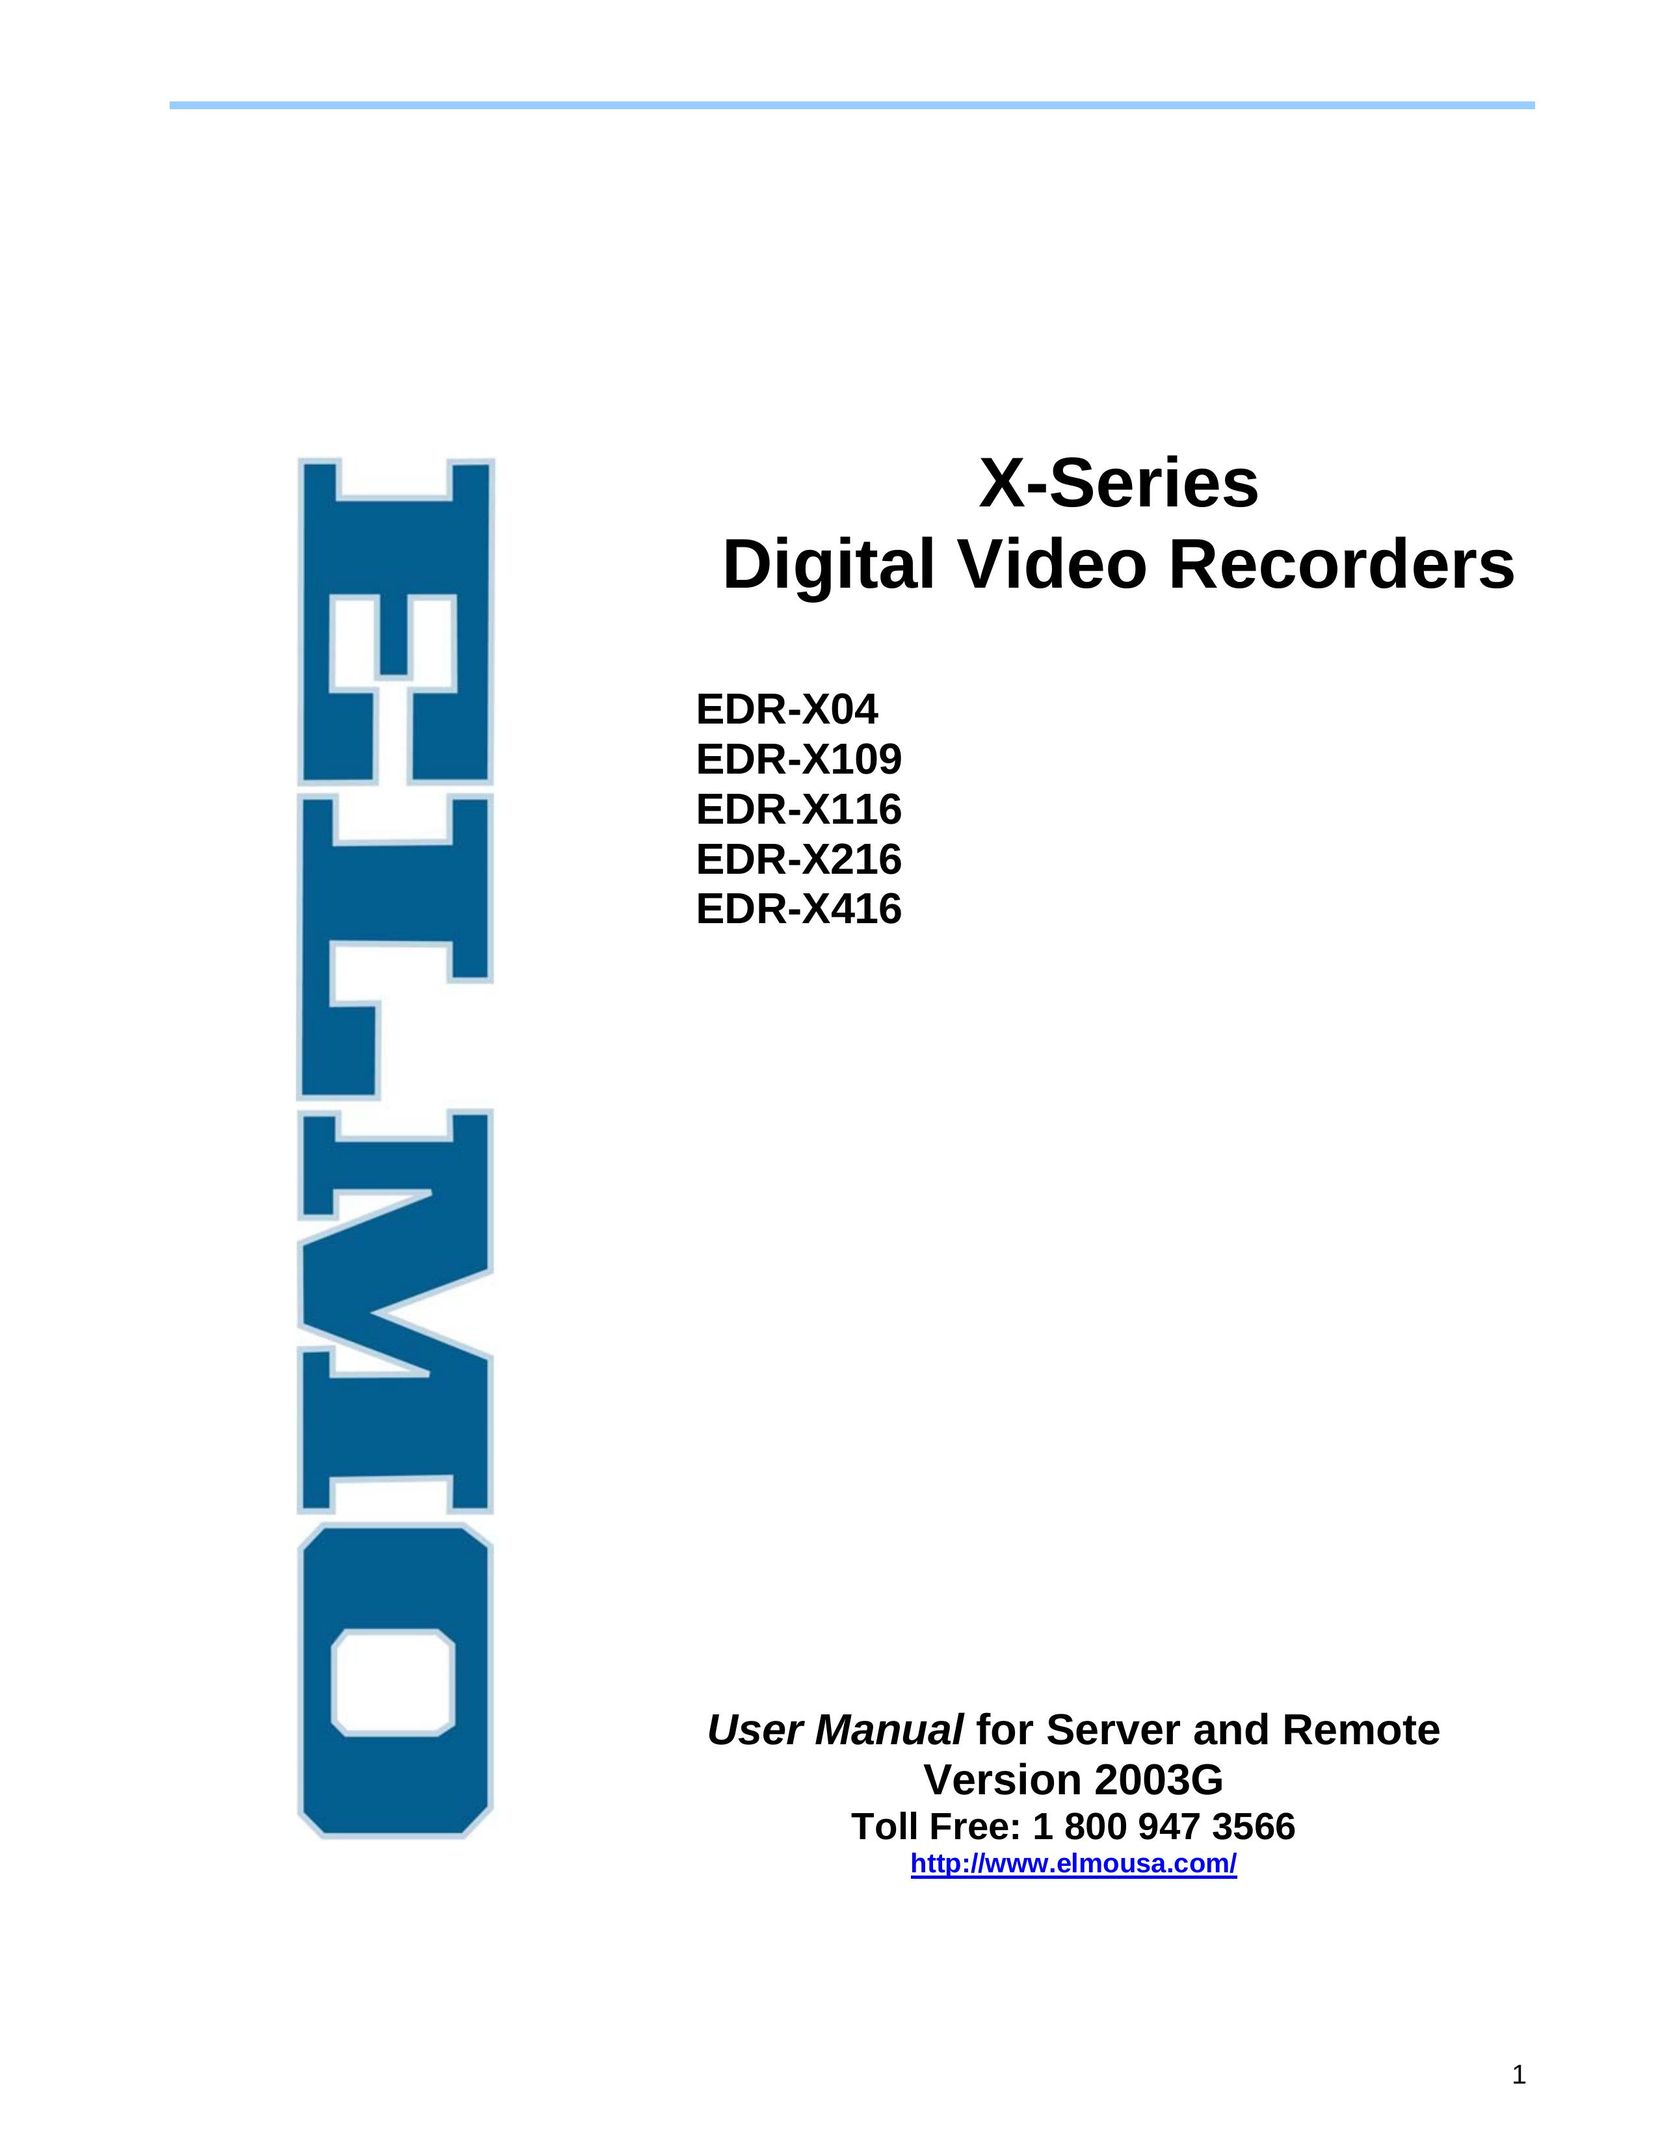 Elmo EDR-X416 DVR User Manual